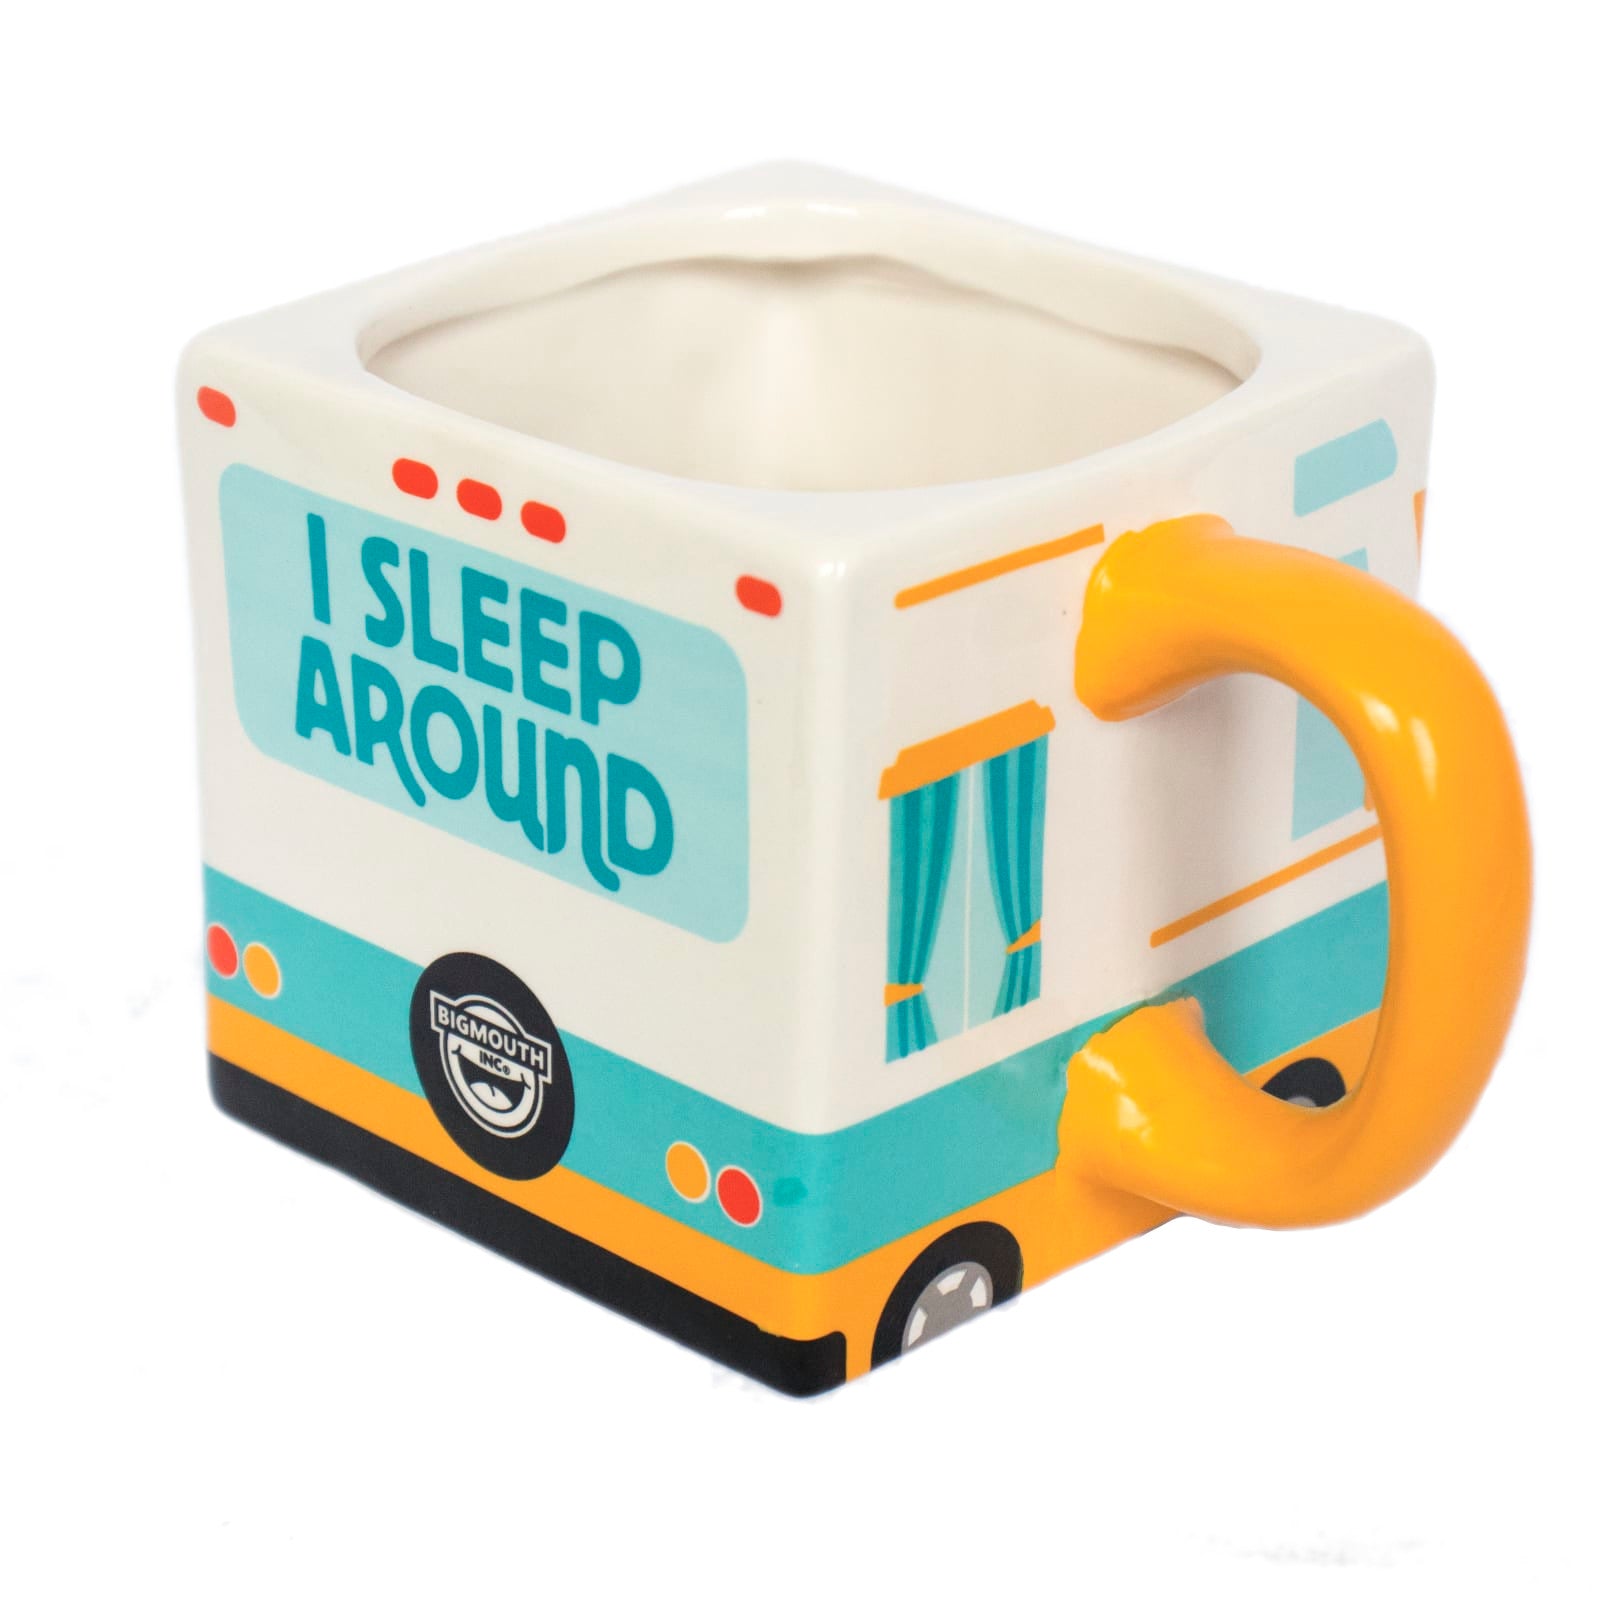 "I sleep Around" RV Camper Mug